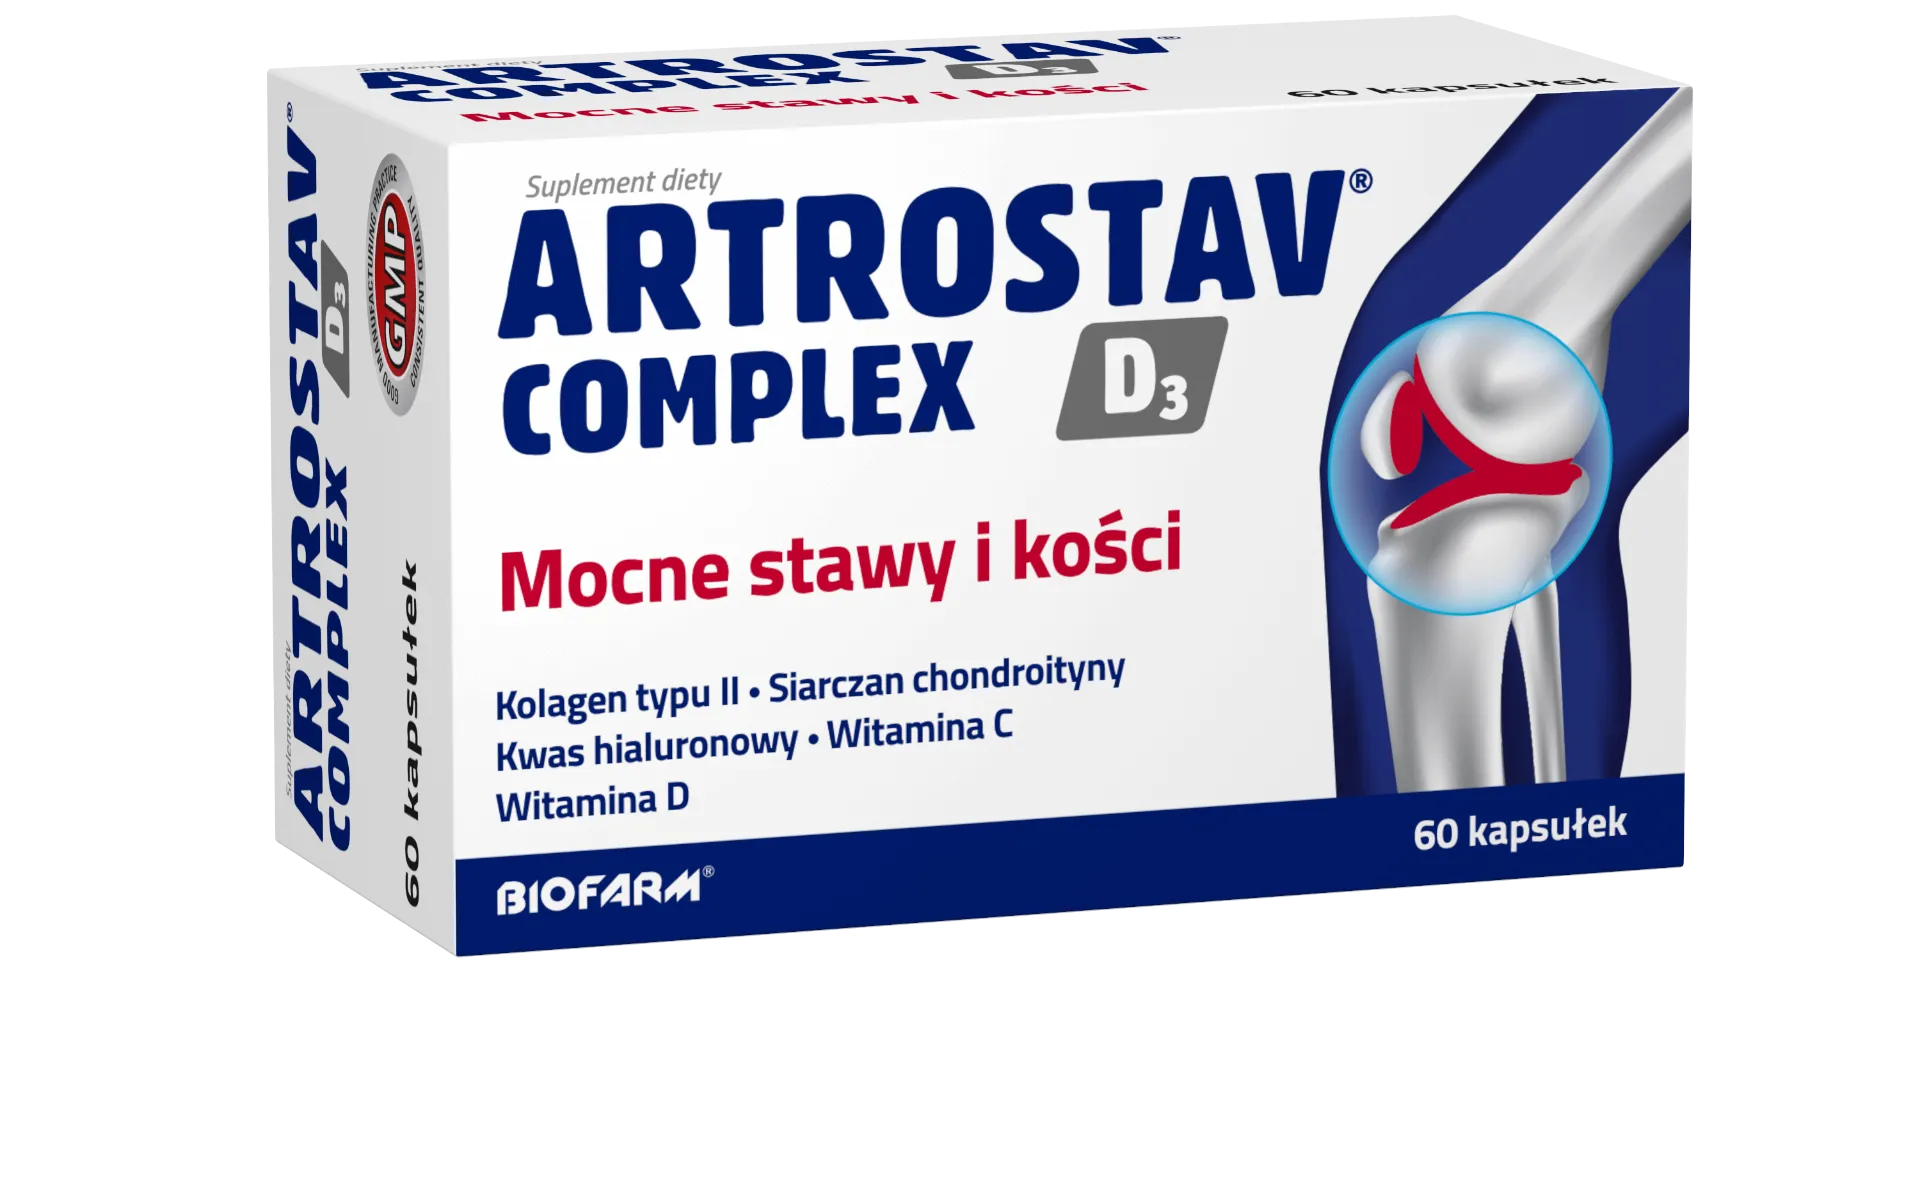 Artrostav Complex D3 Mocne Stawy i Kości, suplement diety, 60 kapsułek